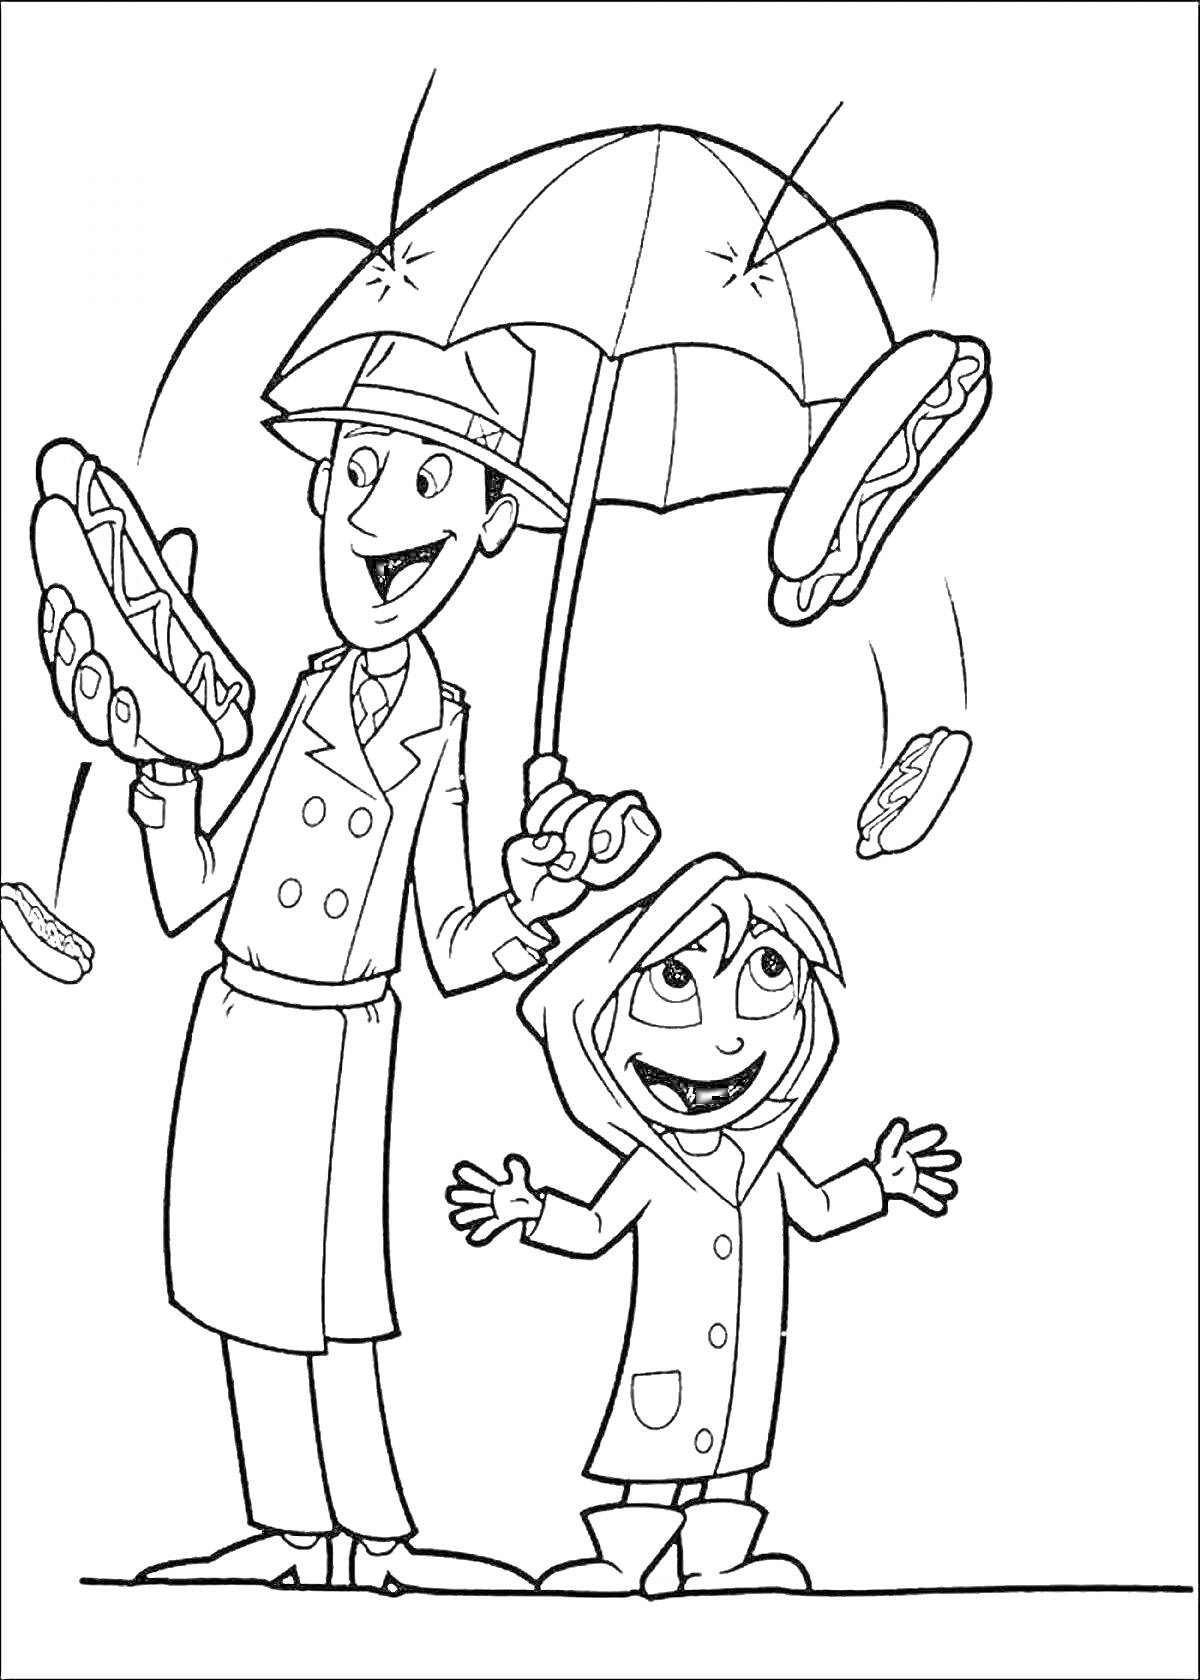 Человек и ребенок в плащах под зонтом с падающими хот-догами